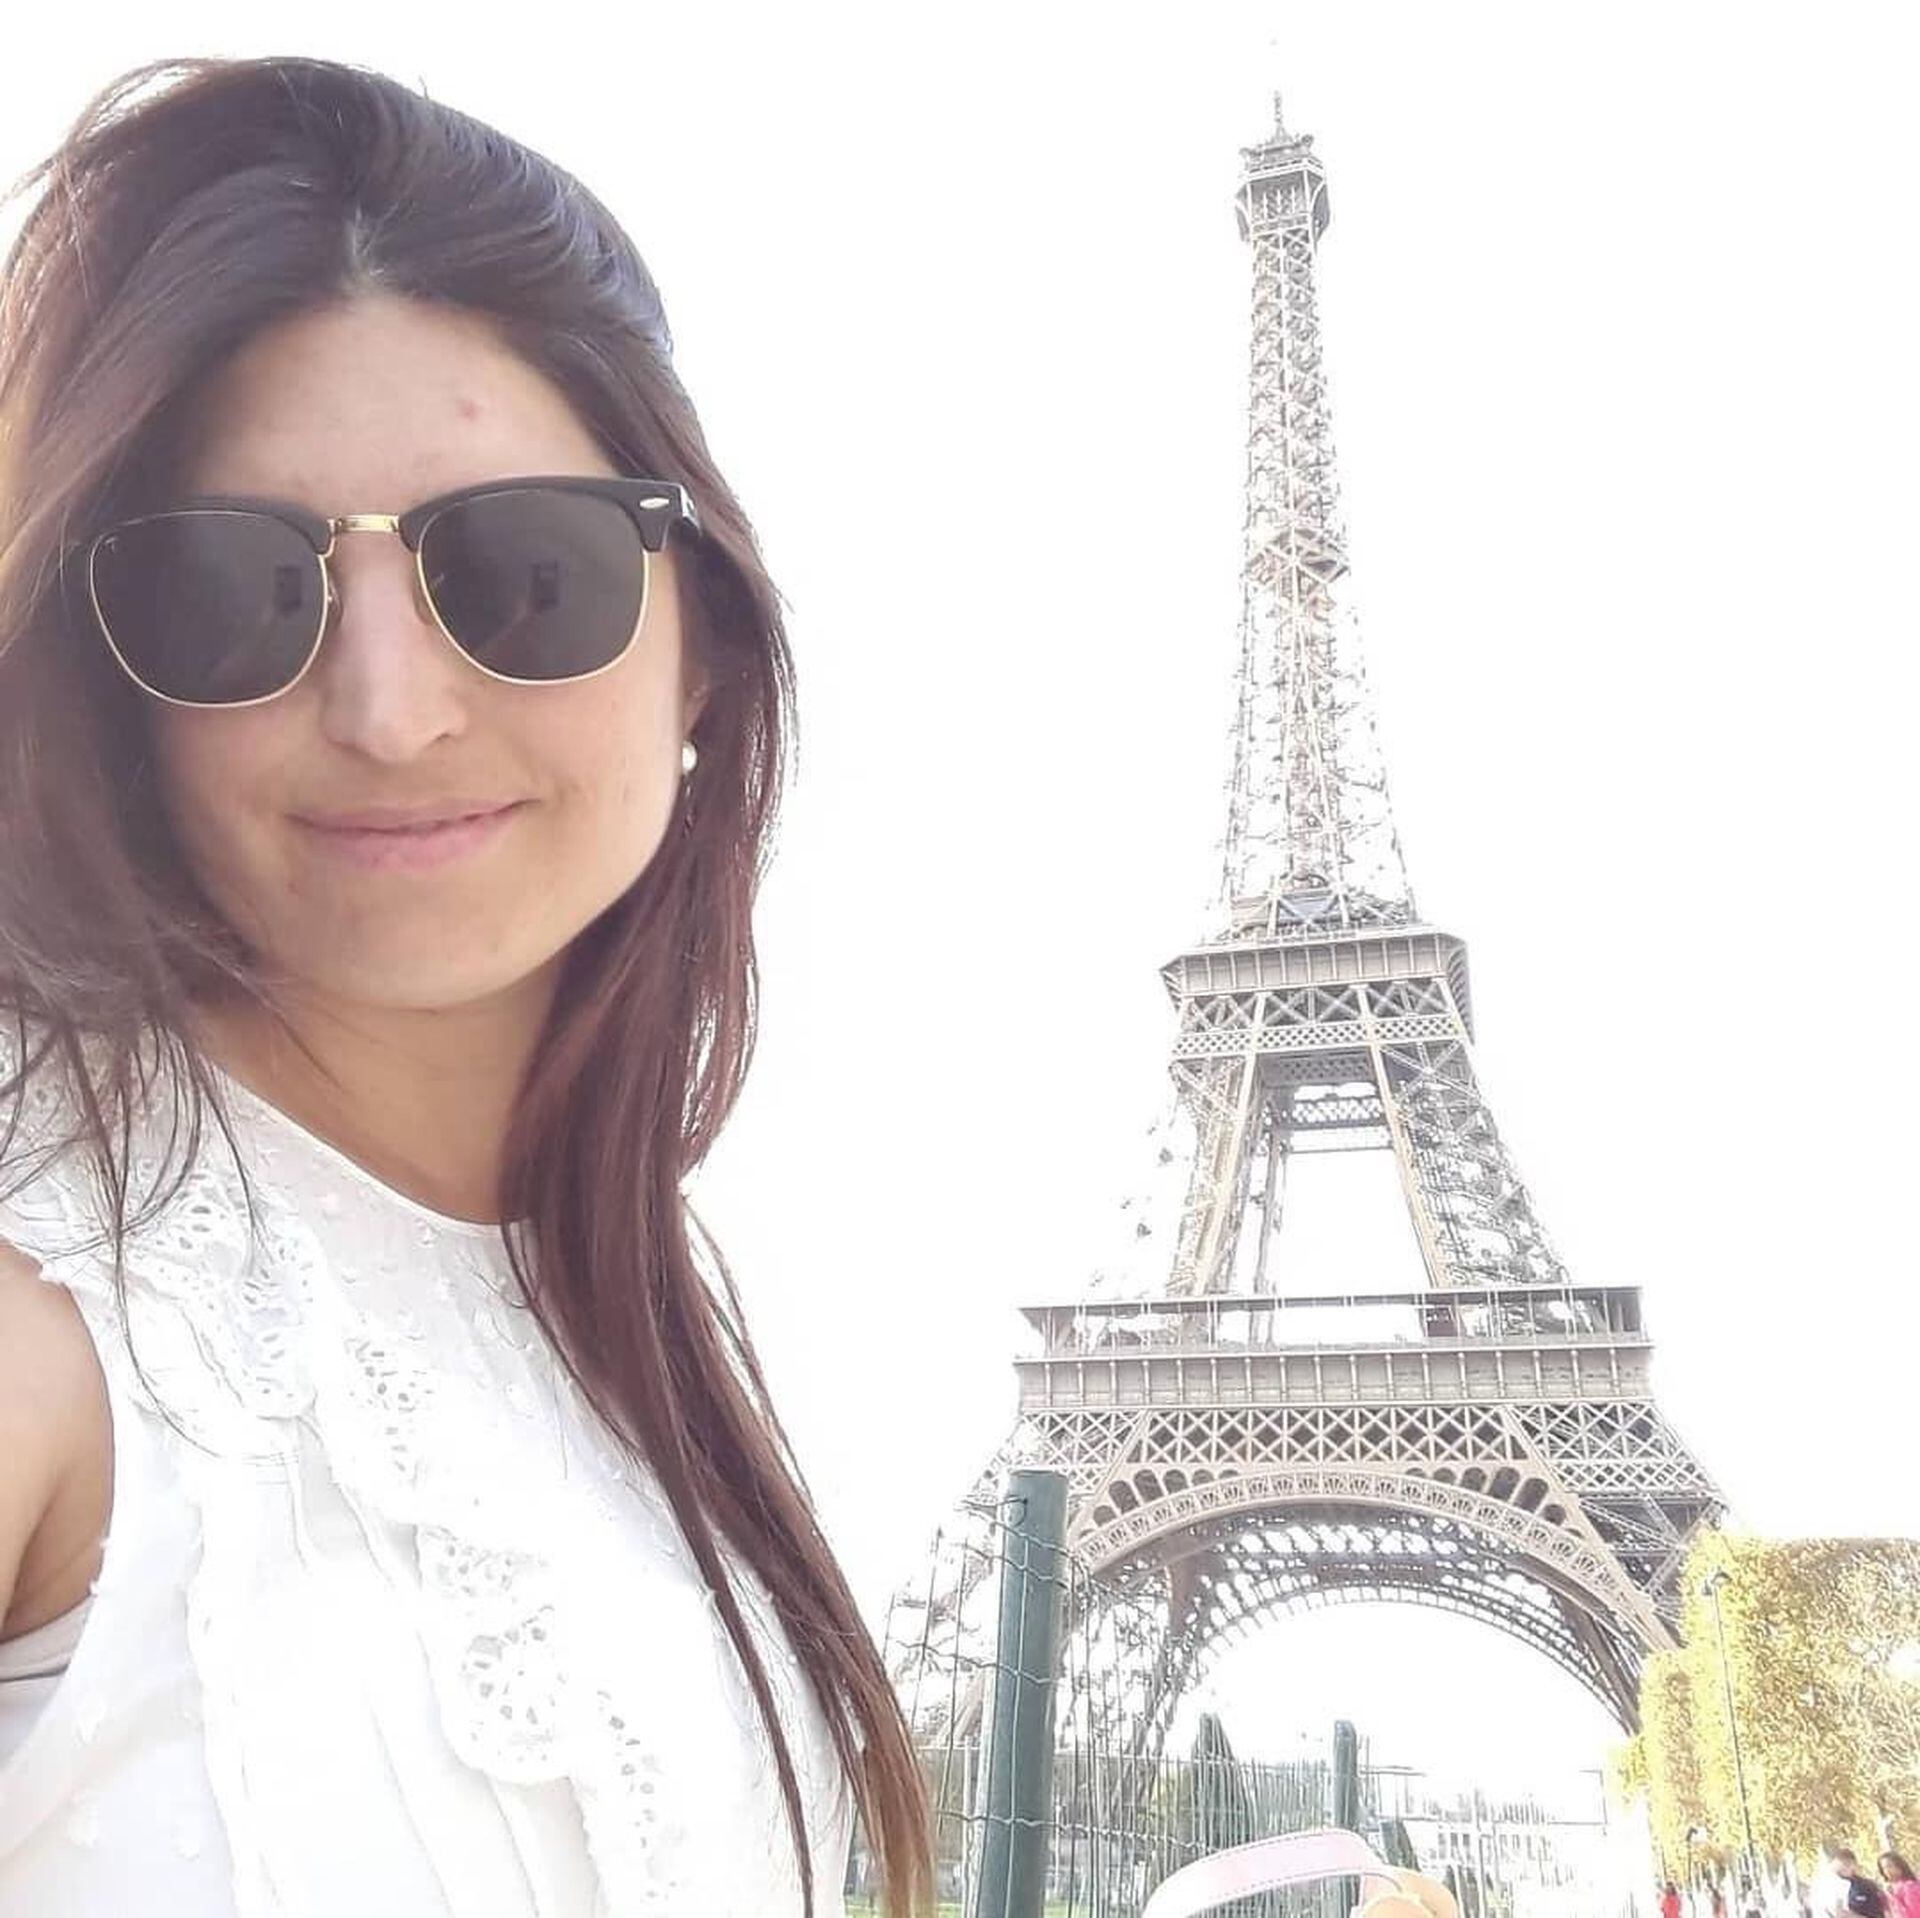 Florencia soñaba desde chica con conocer la Torre Eiffel.